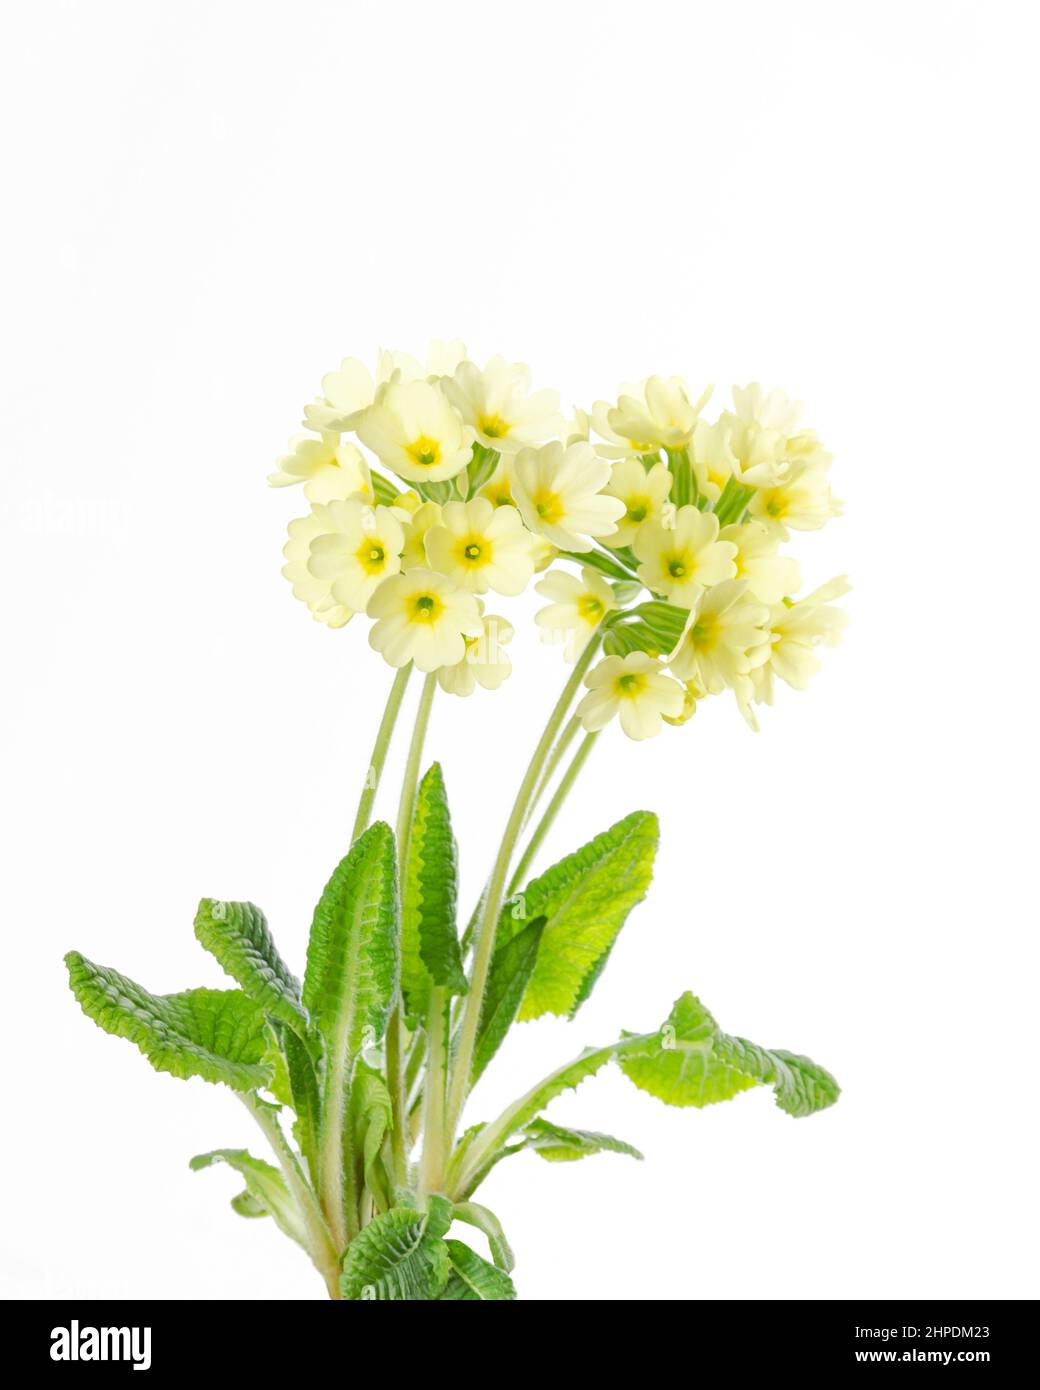 Primrose comune, Primula vulgaris, vista frontale, su sfondo bianco. Noto anche come Primrose inglese, è una specie di piante da fiore. Foto Stock